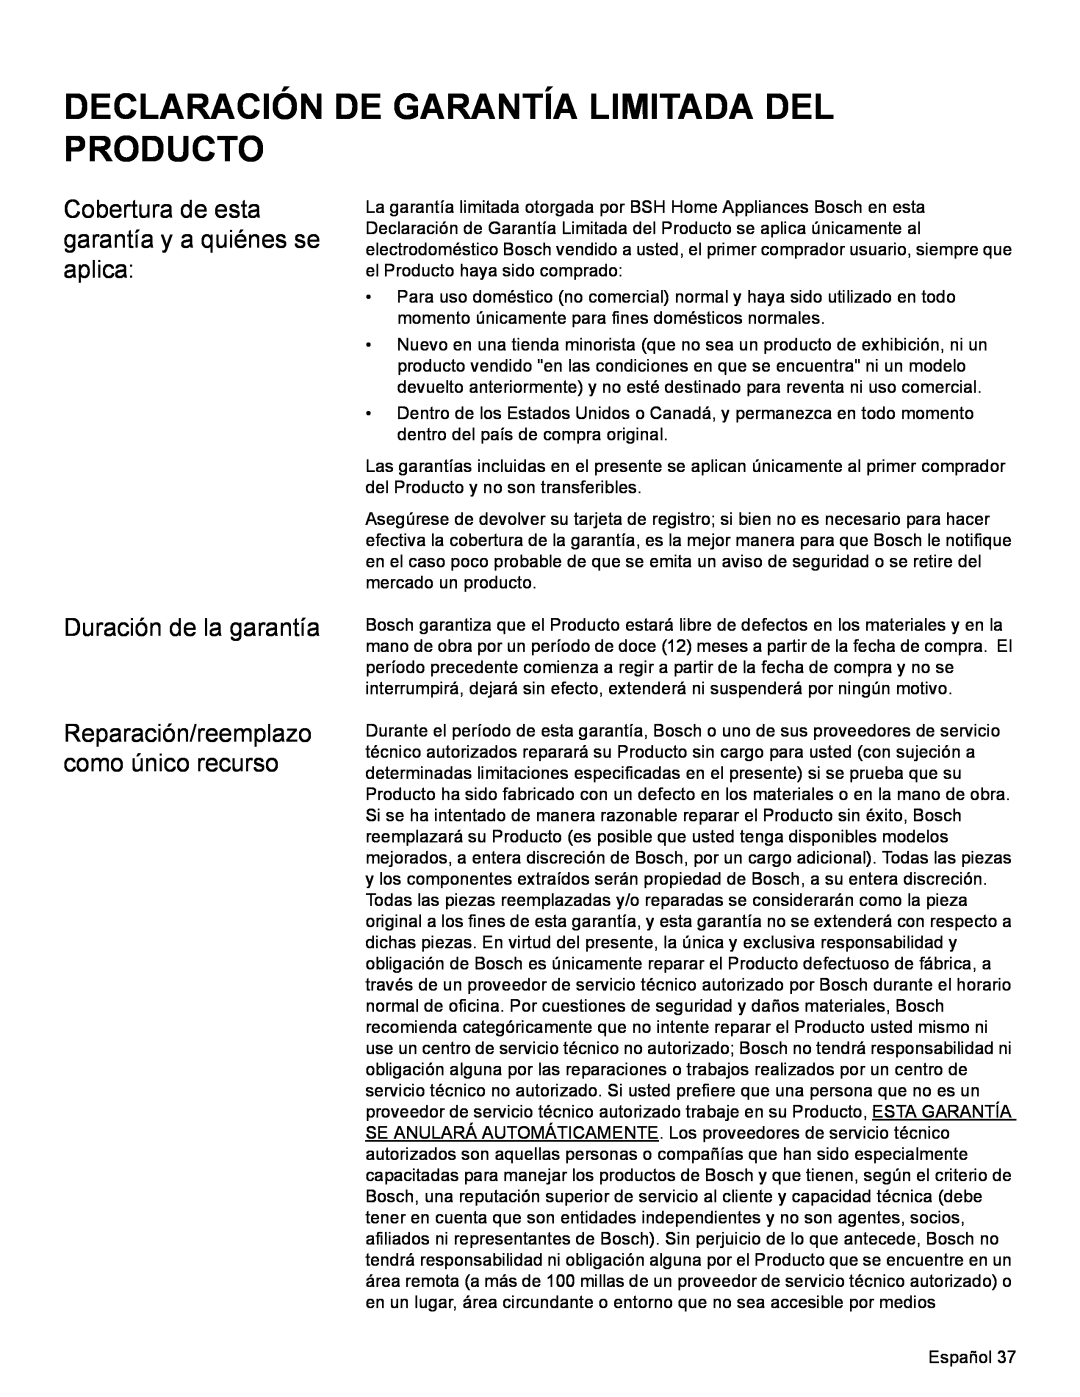 Bosch Appliances HBN35 Declaración De Garantía Limitada Del Producto, Cobertura de esta garantía y a quiénes se aplica 